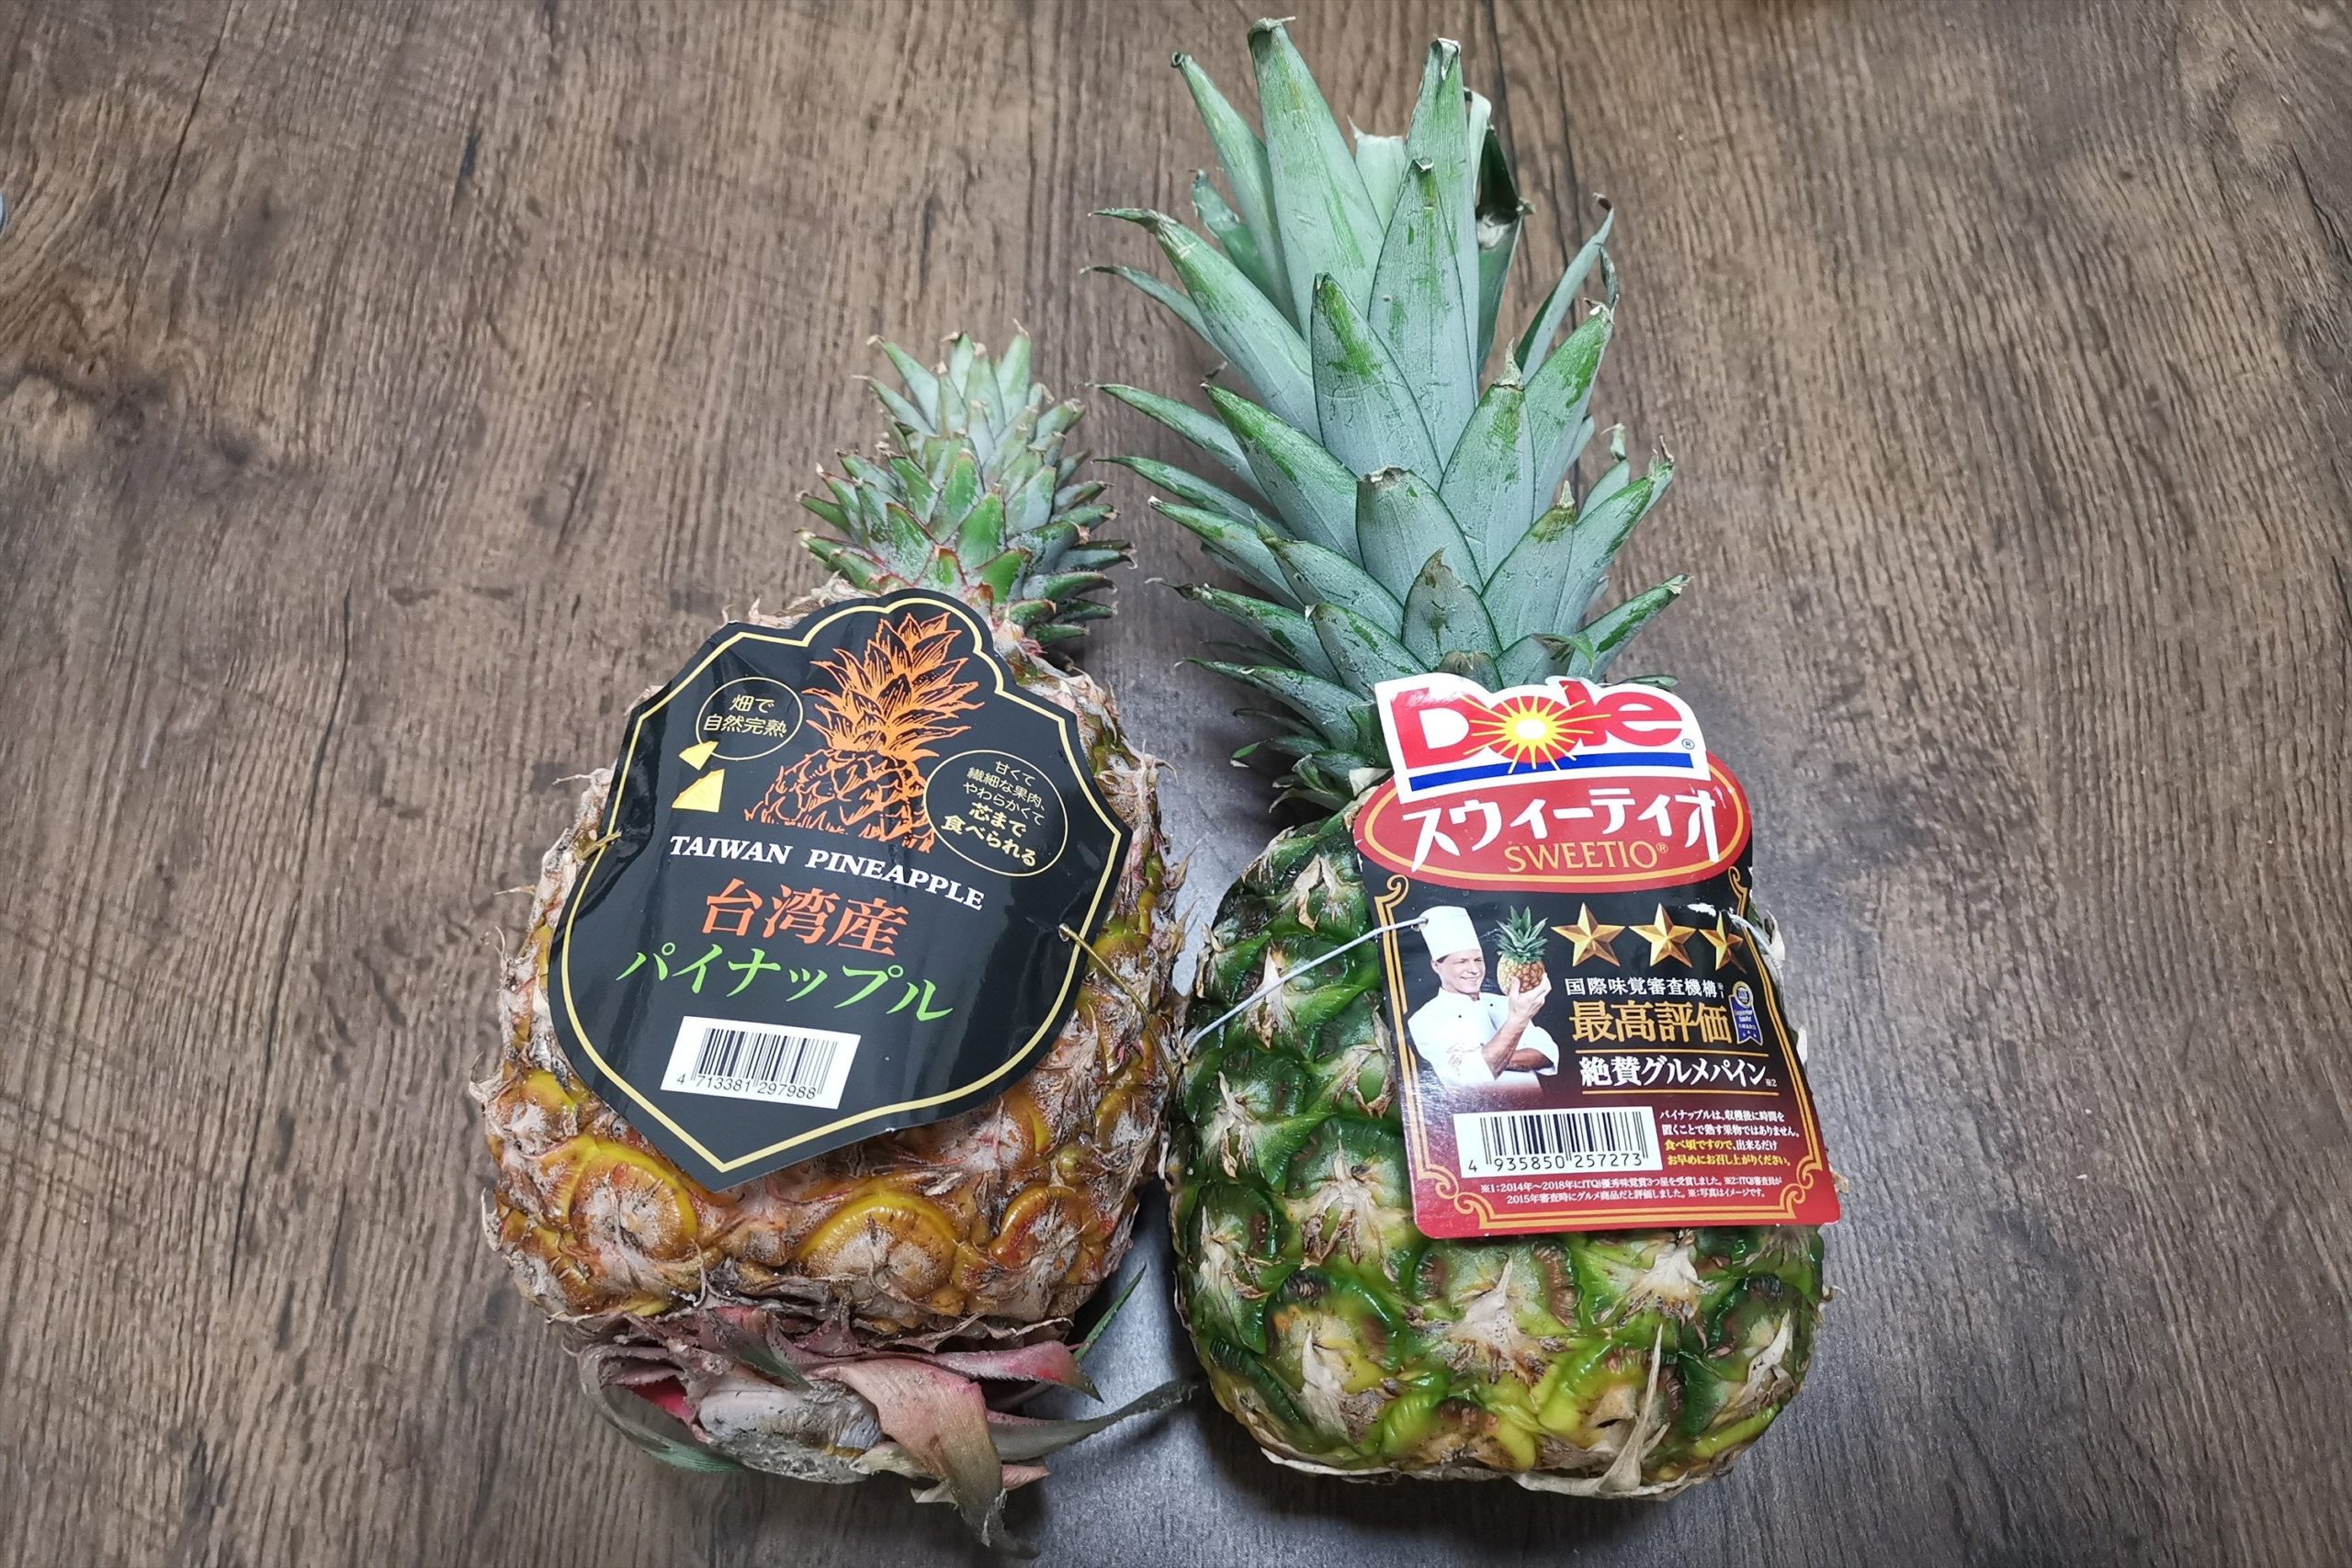 話題の 台湾産パイナップル フィリピン産とどちらが美味しい 比較した結果 ニュースサイトしらべぇ